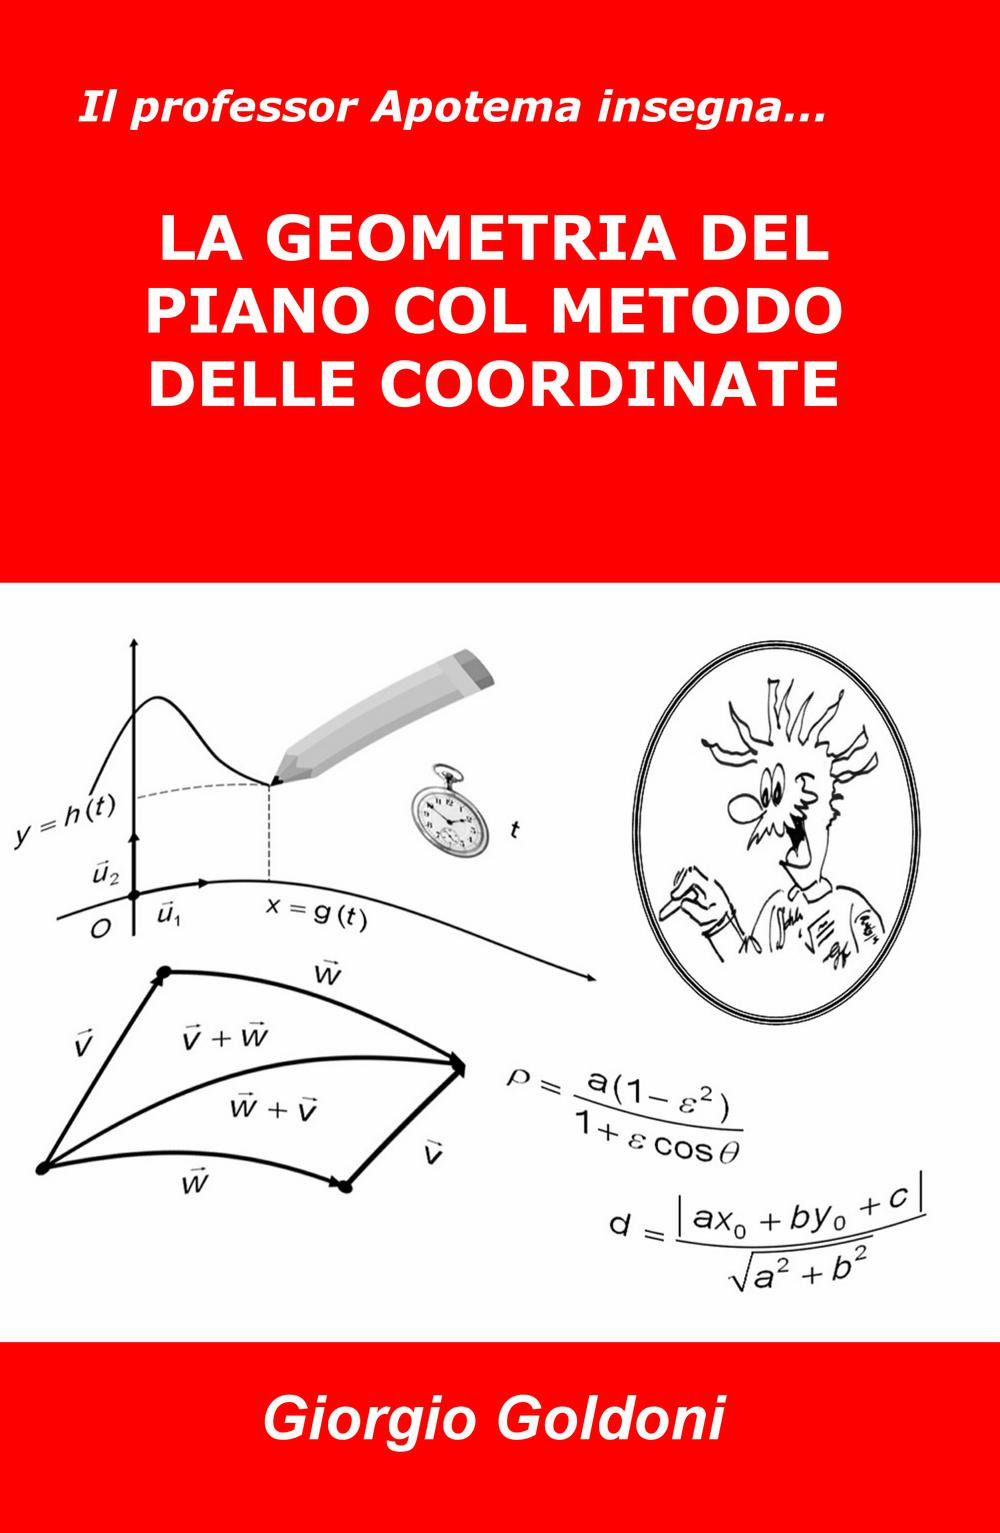 Image of Il professor Apotema insegna... la geometria del piano col metodo delle coordinate